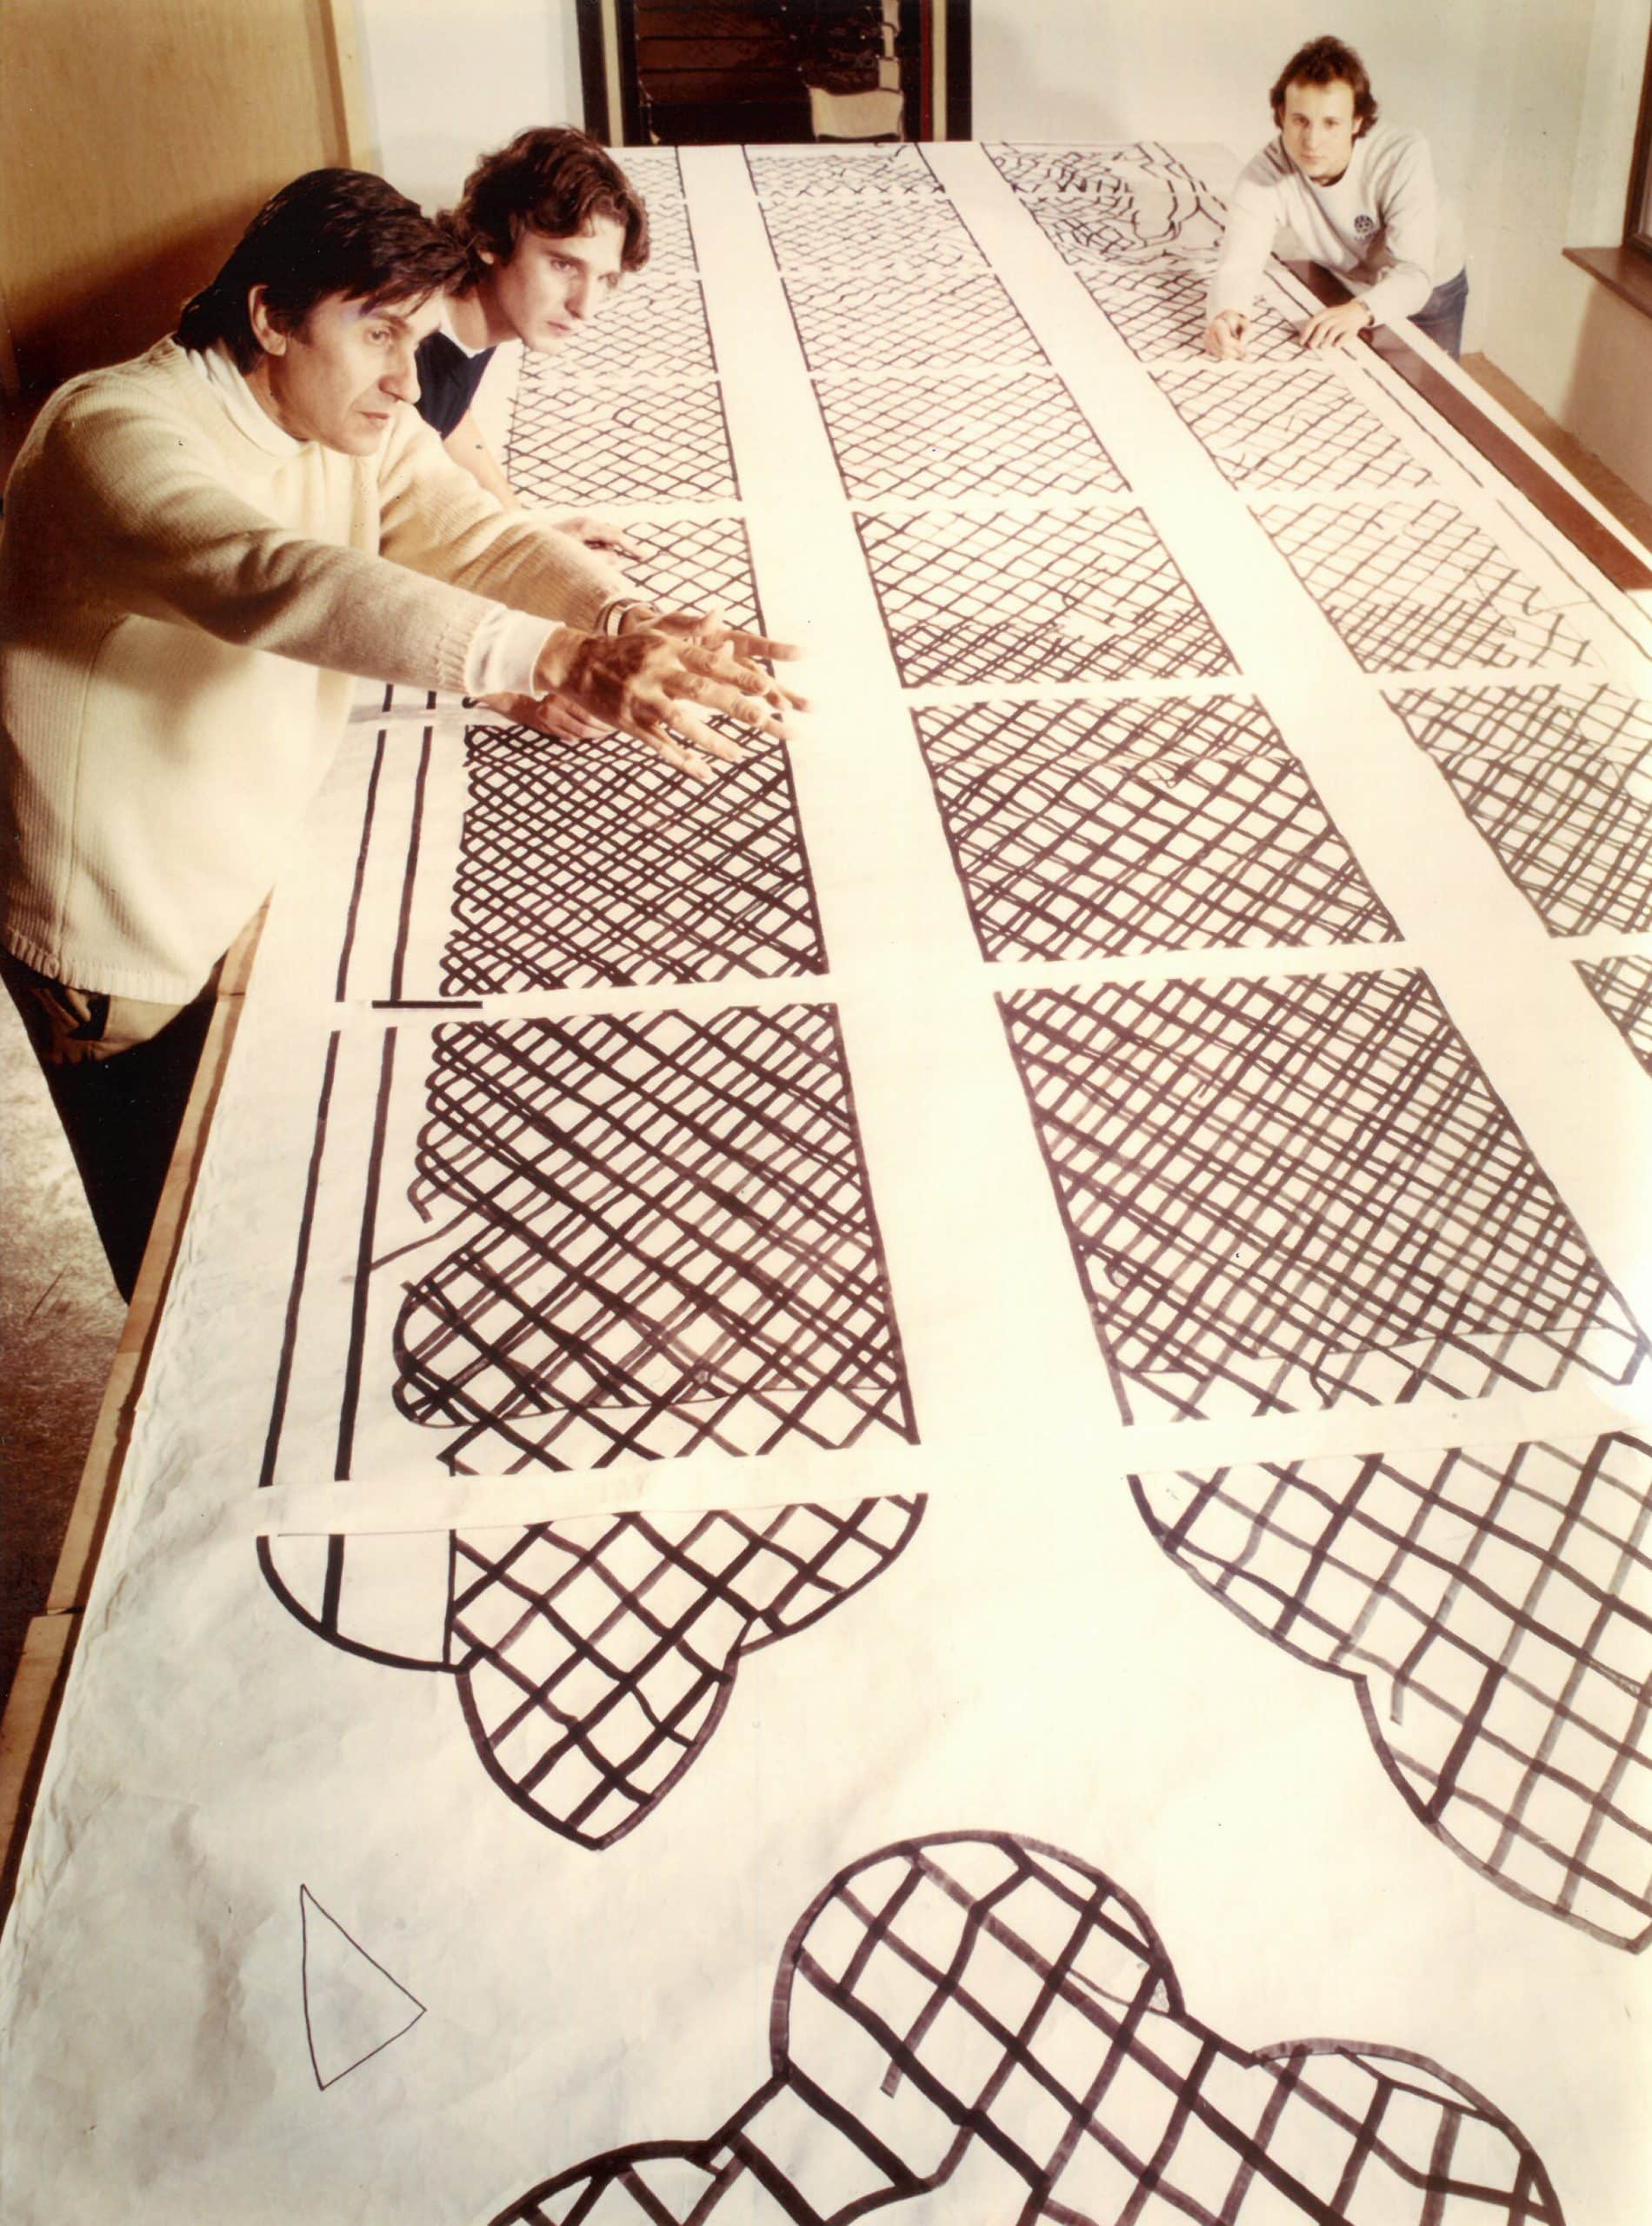 Vergilbtes Foto: Drei Personen betrachten Entwurfszeichnungen für Glaskunstfenster in einem Atelier.